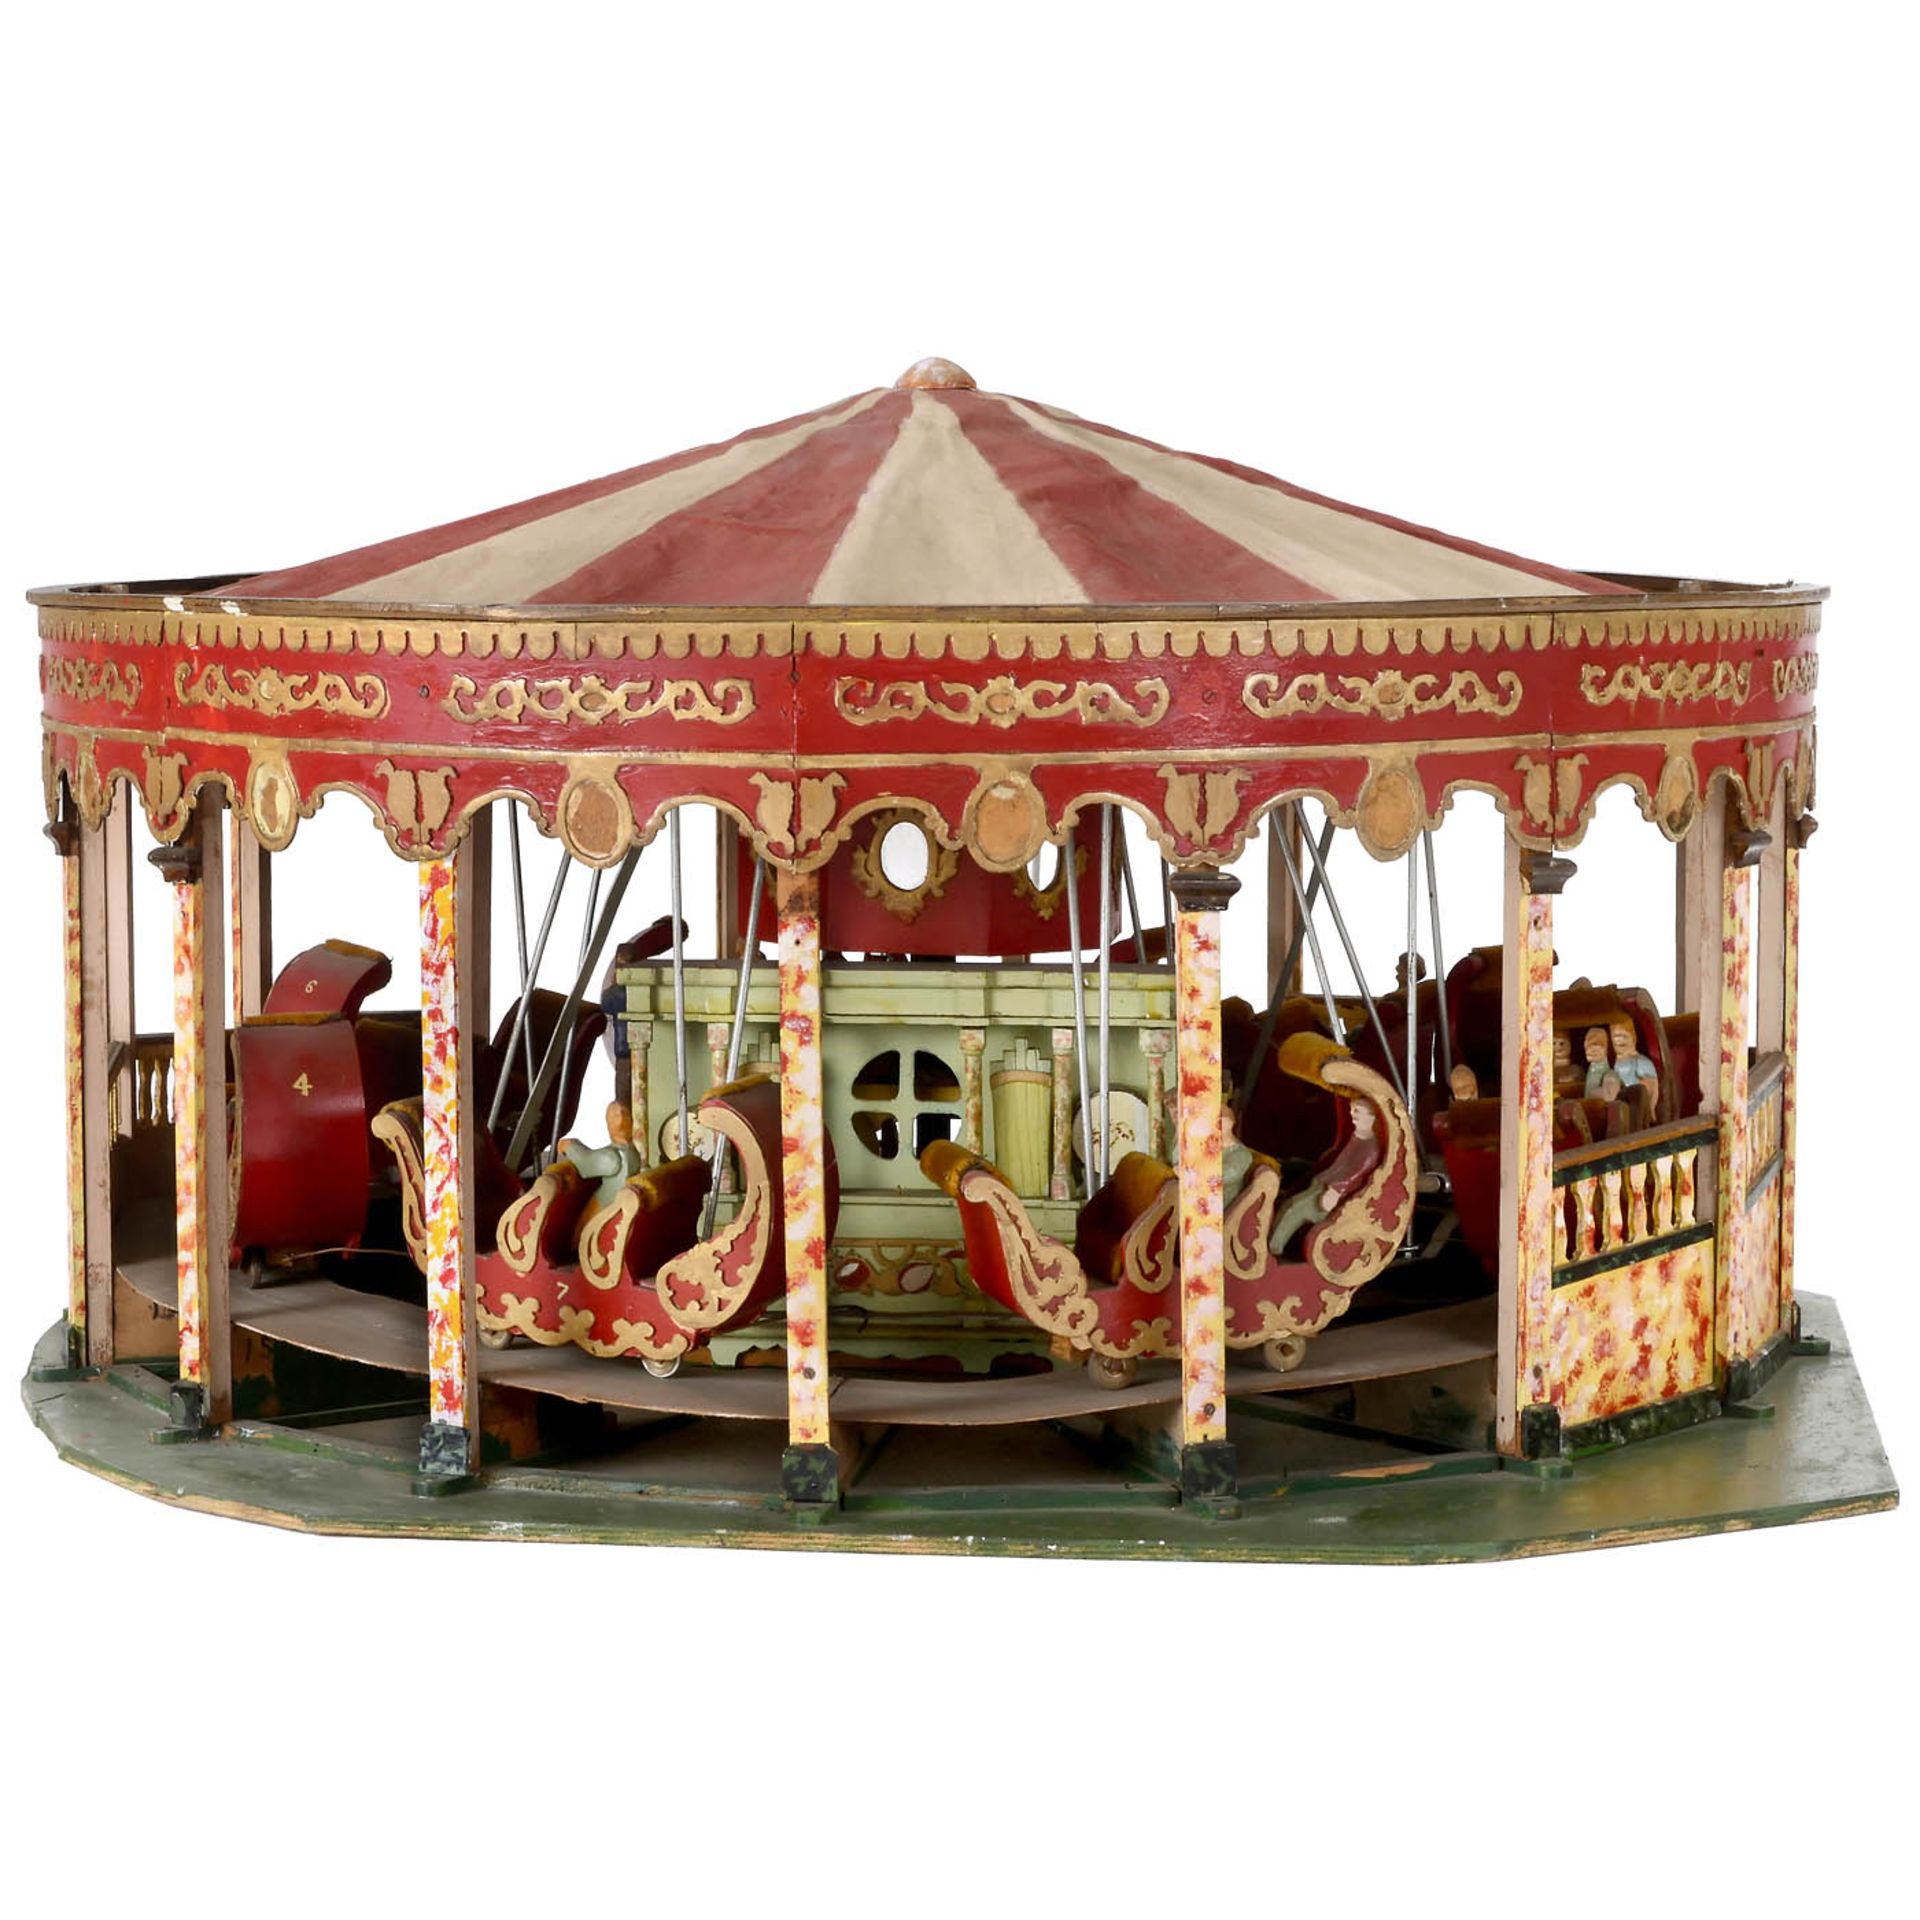 Miniatur-Jahrmarktmodell eines englischen Gondel-Karussells Kirmes-Modell aus Holz, Metall und